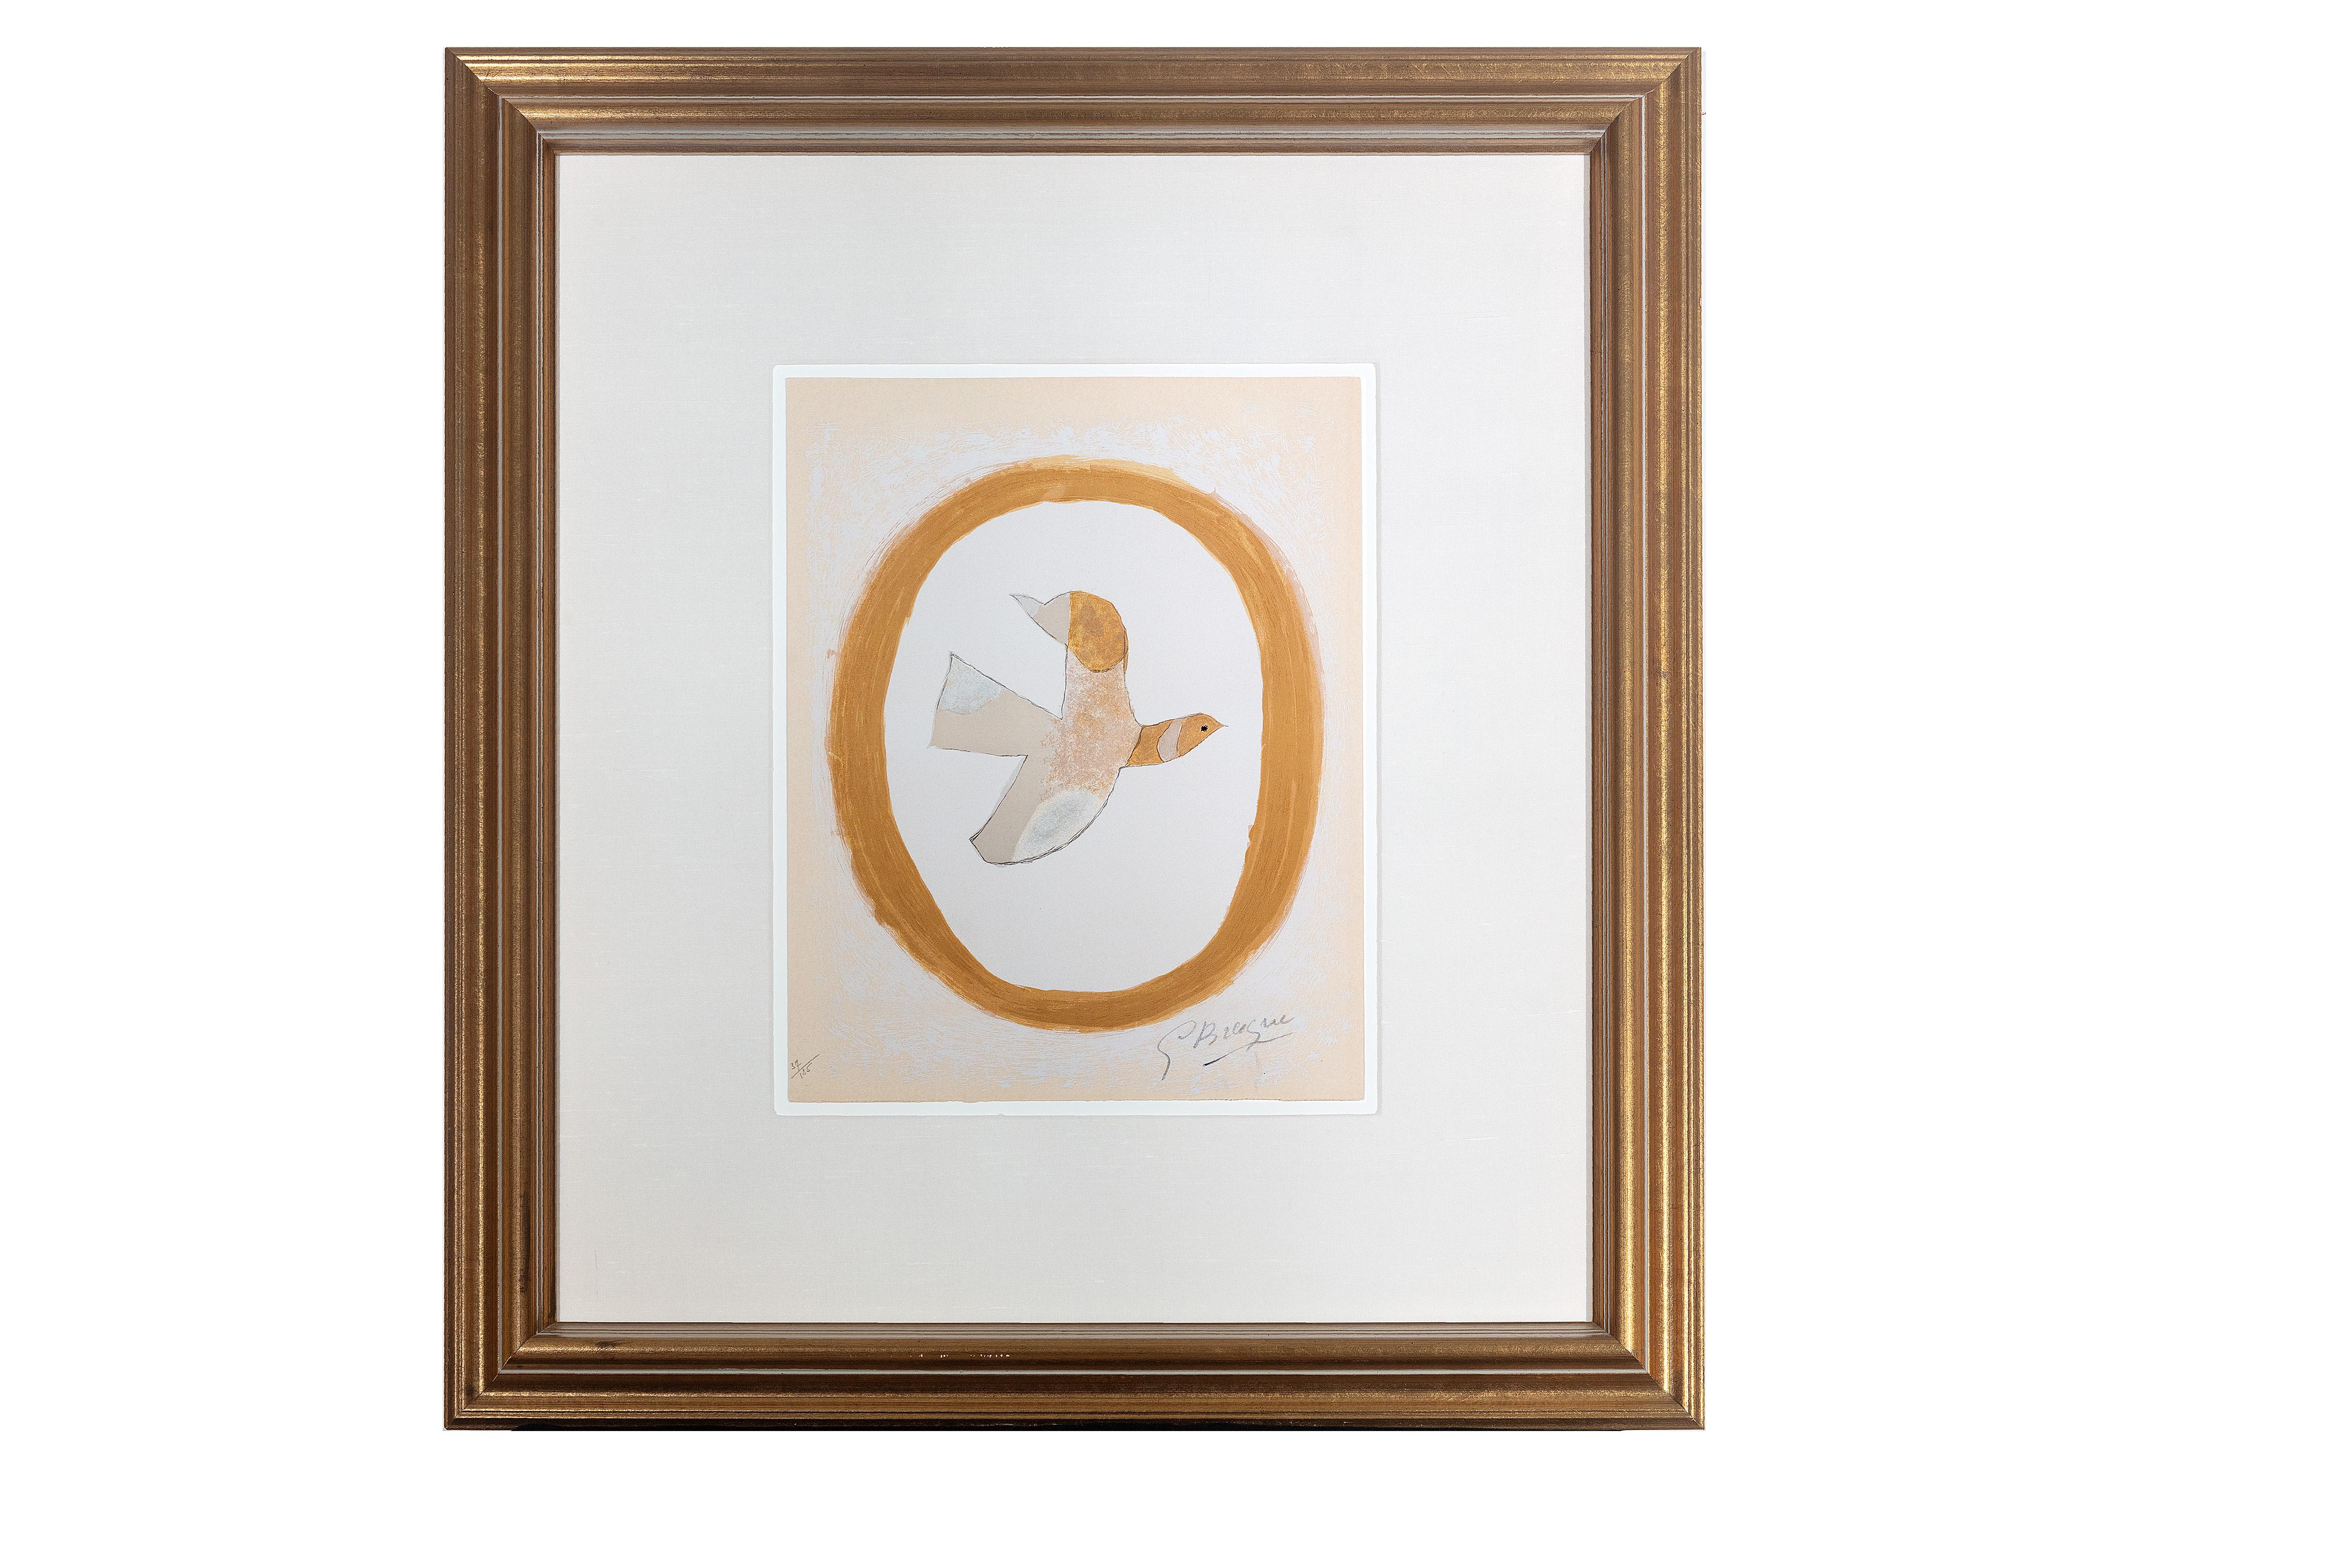 Georges Braque Animal Print – "L'oiseau de sables (Vogel des Sandes)" zeitgenössisches Tier hell signiert 